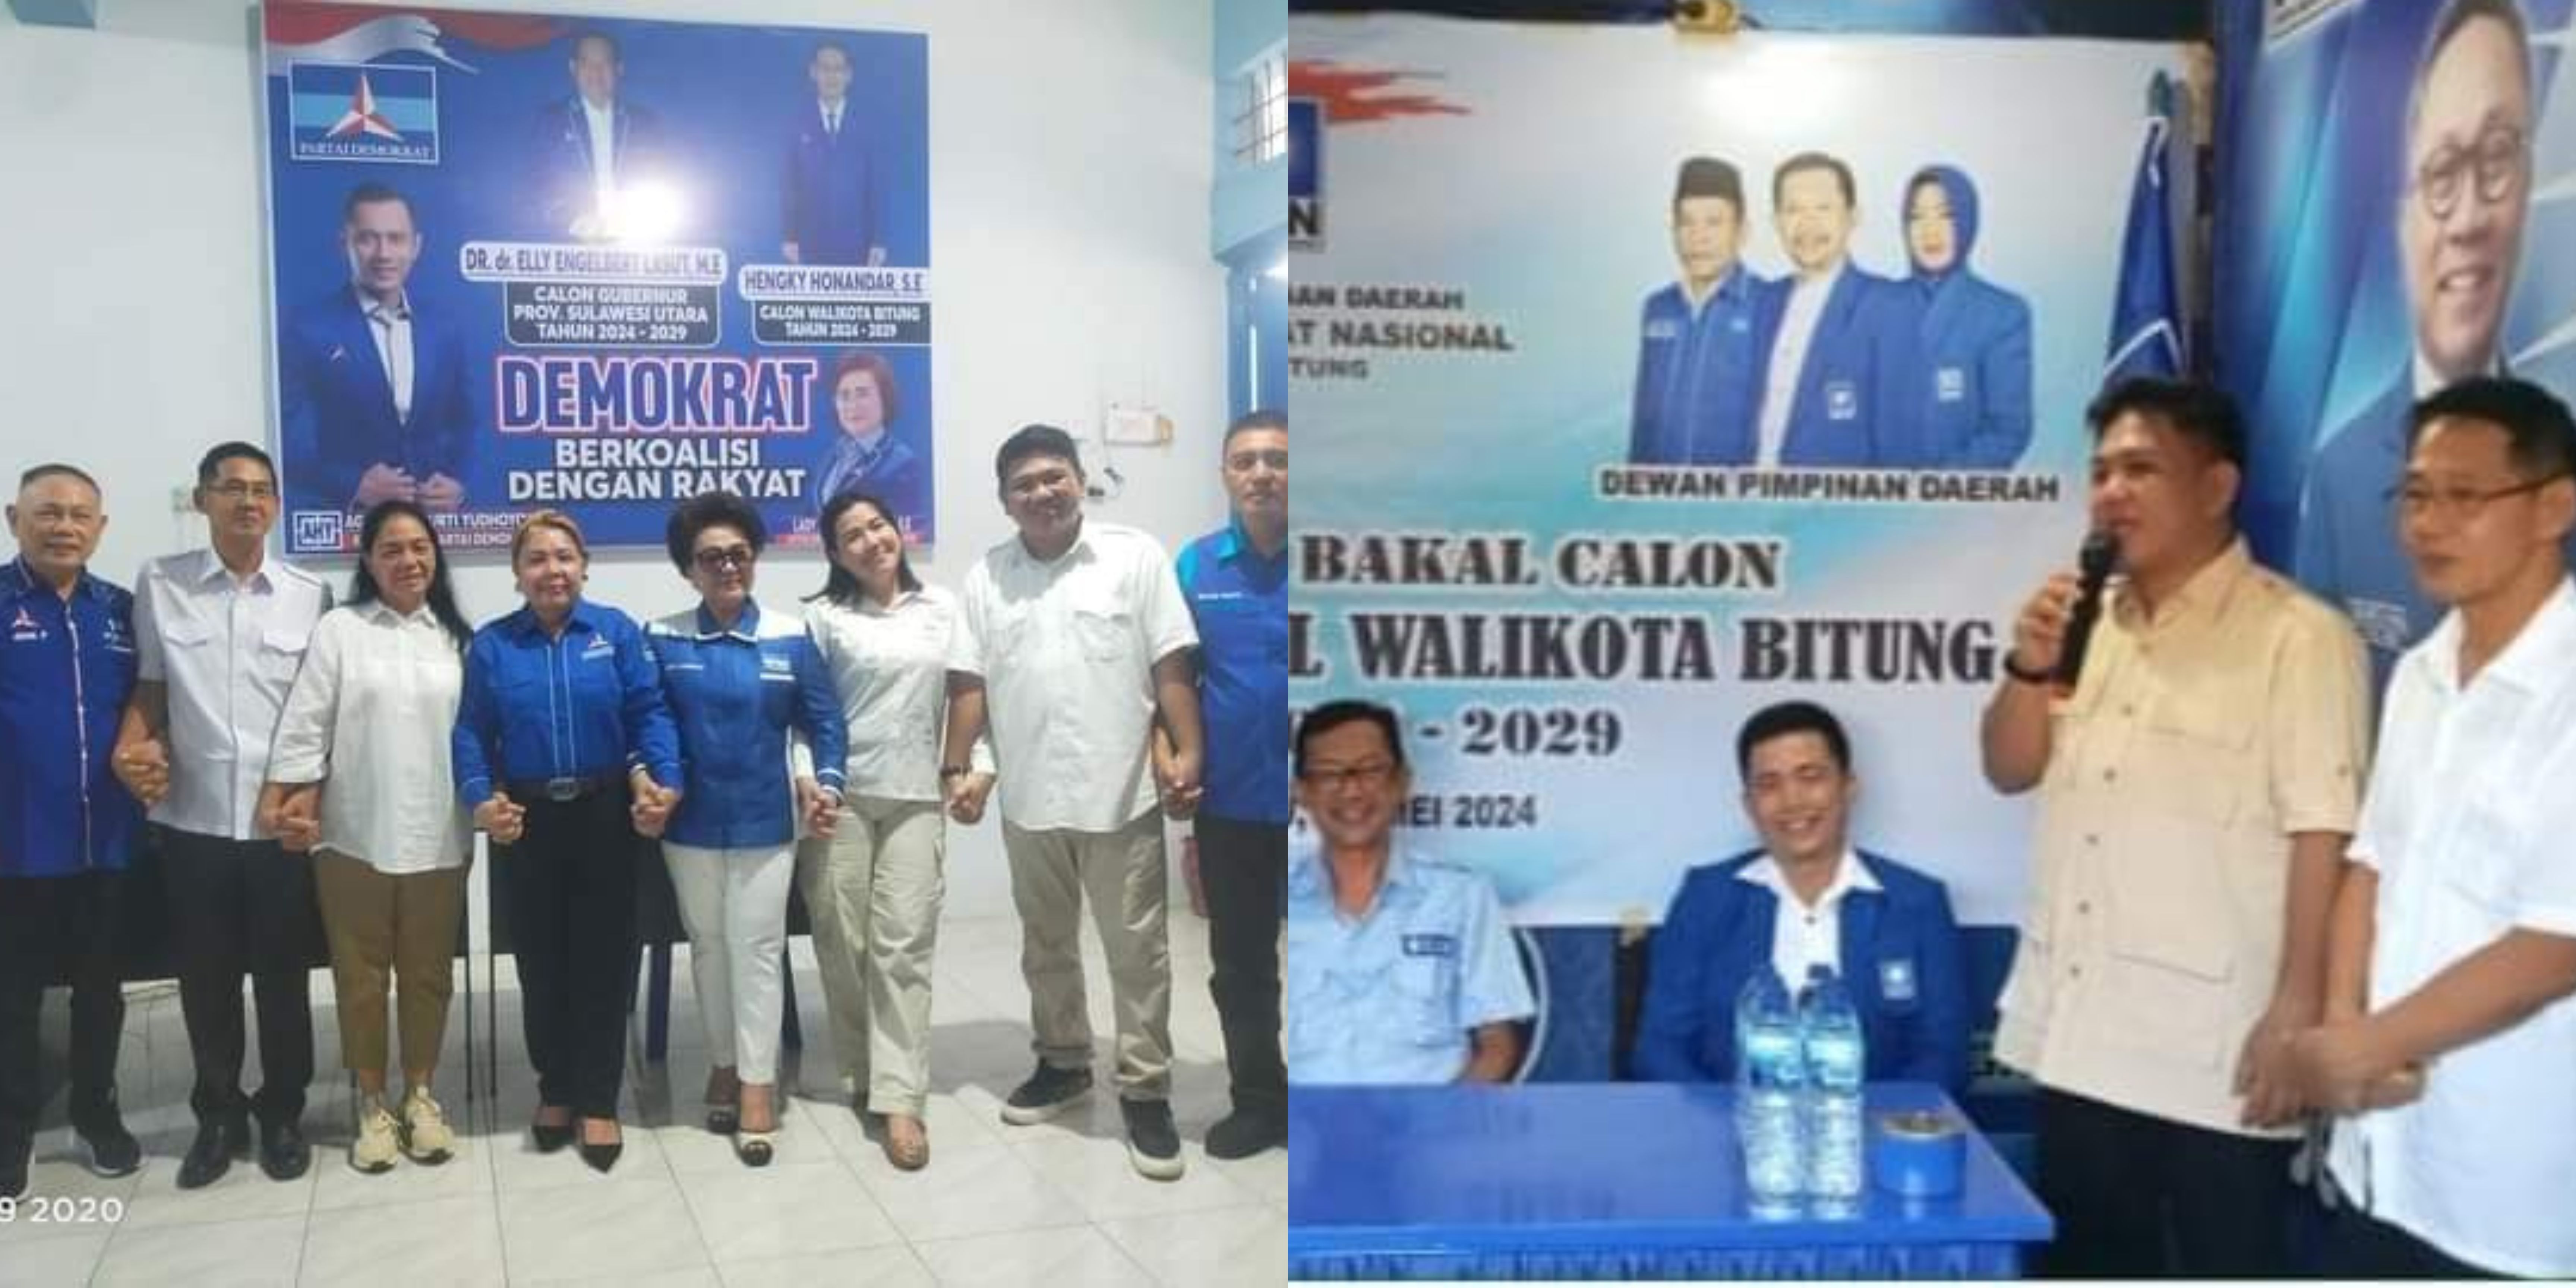 Kolase foto pendaftaran bakal calon Kepala daerah bersama Randito Maringka di PAN dan Demokrat